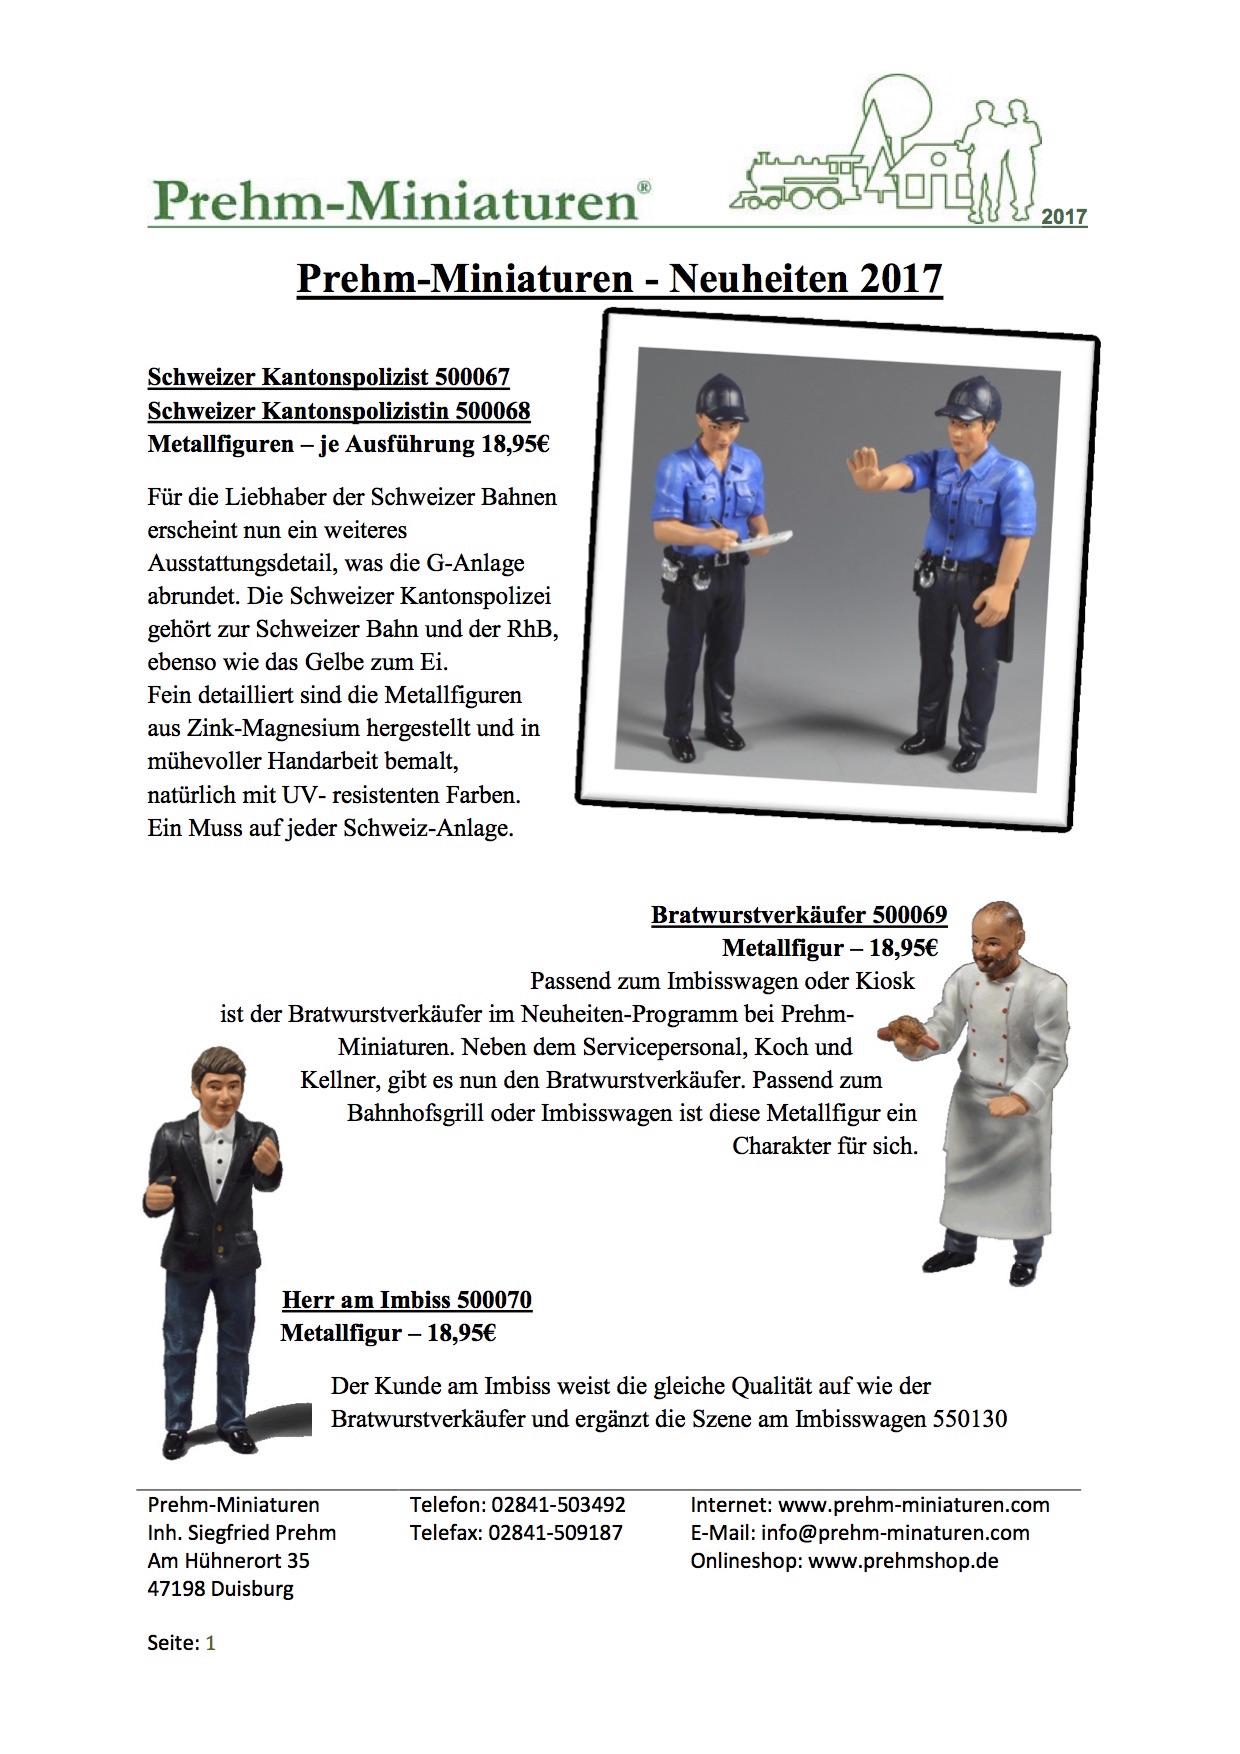 Prehm Miniaturen Neuheiten (New Items) 2017